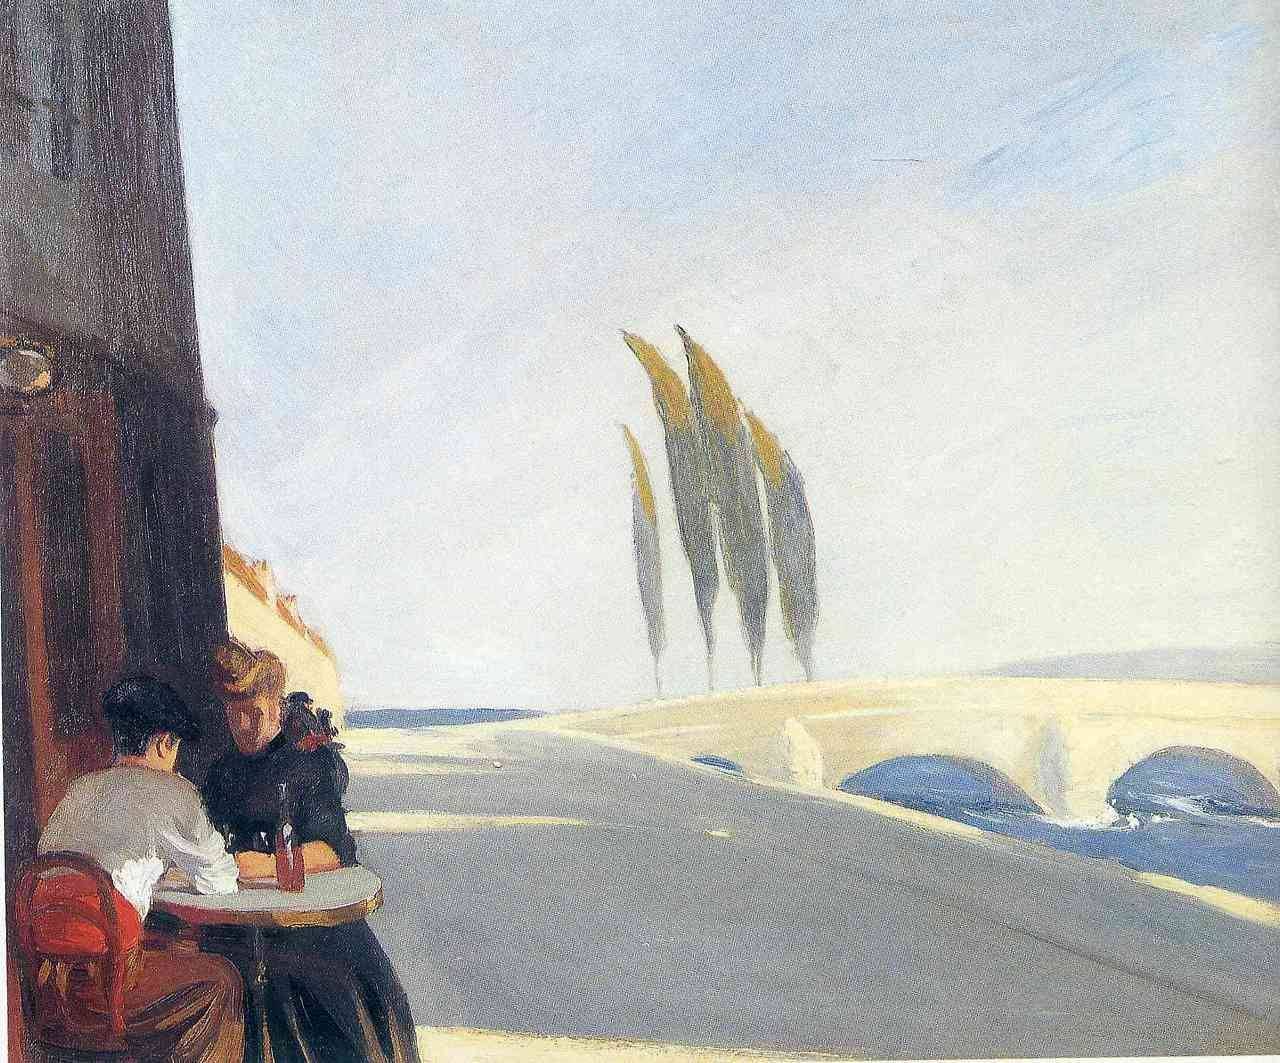 O Bistrô (A Loja de Vinhos) by Edward Hopper - 1909 